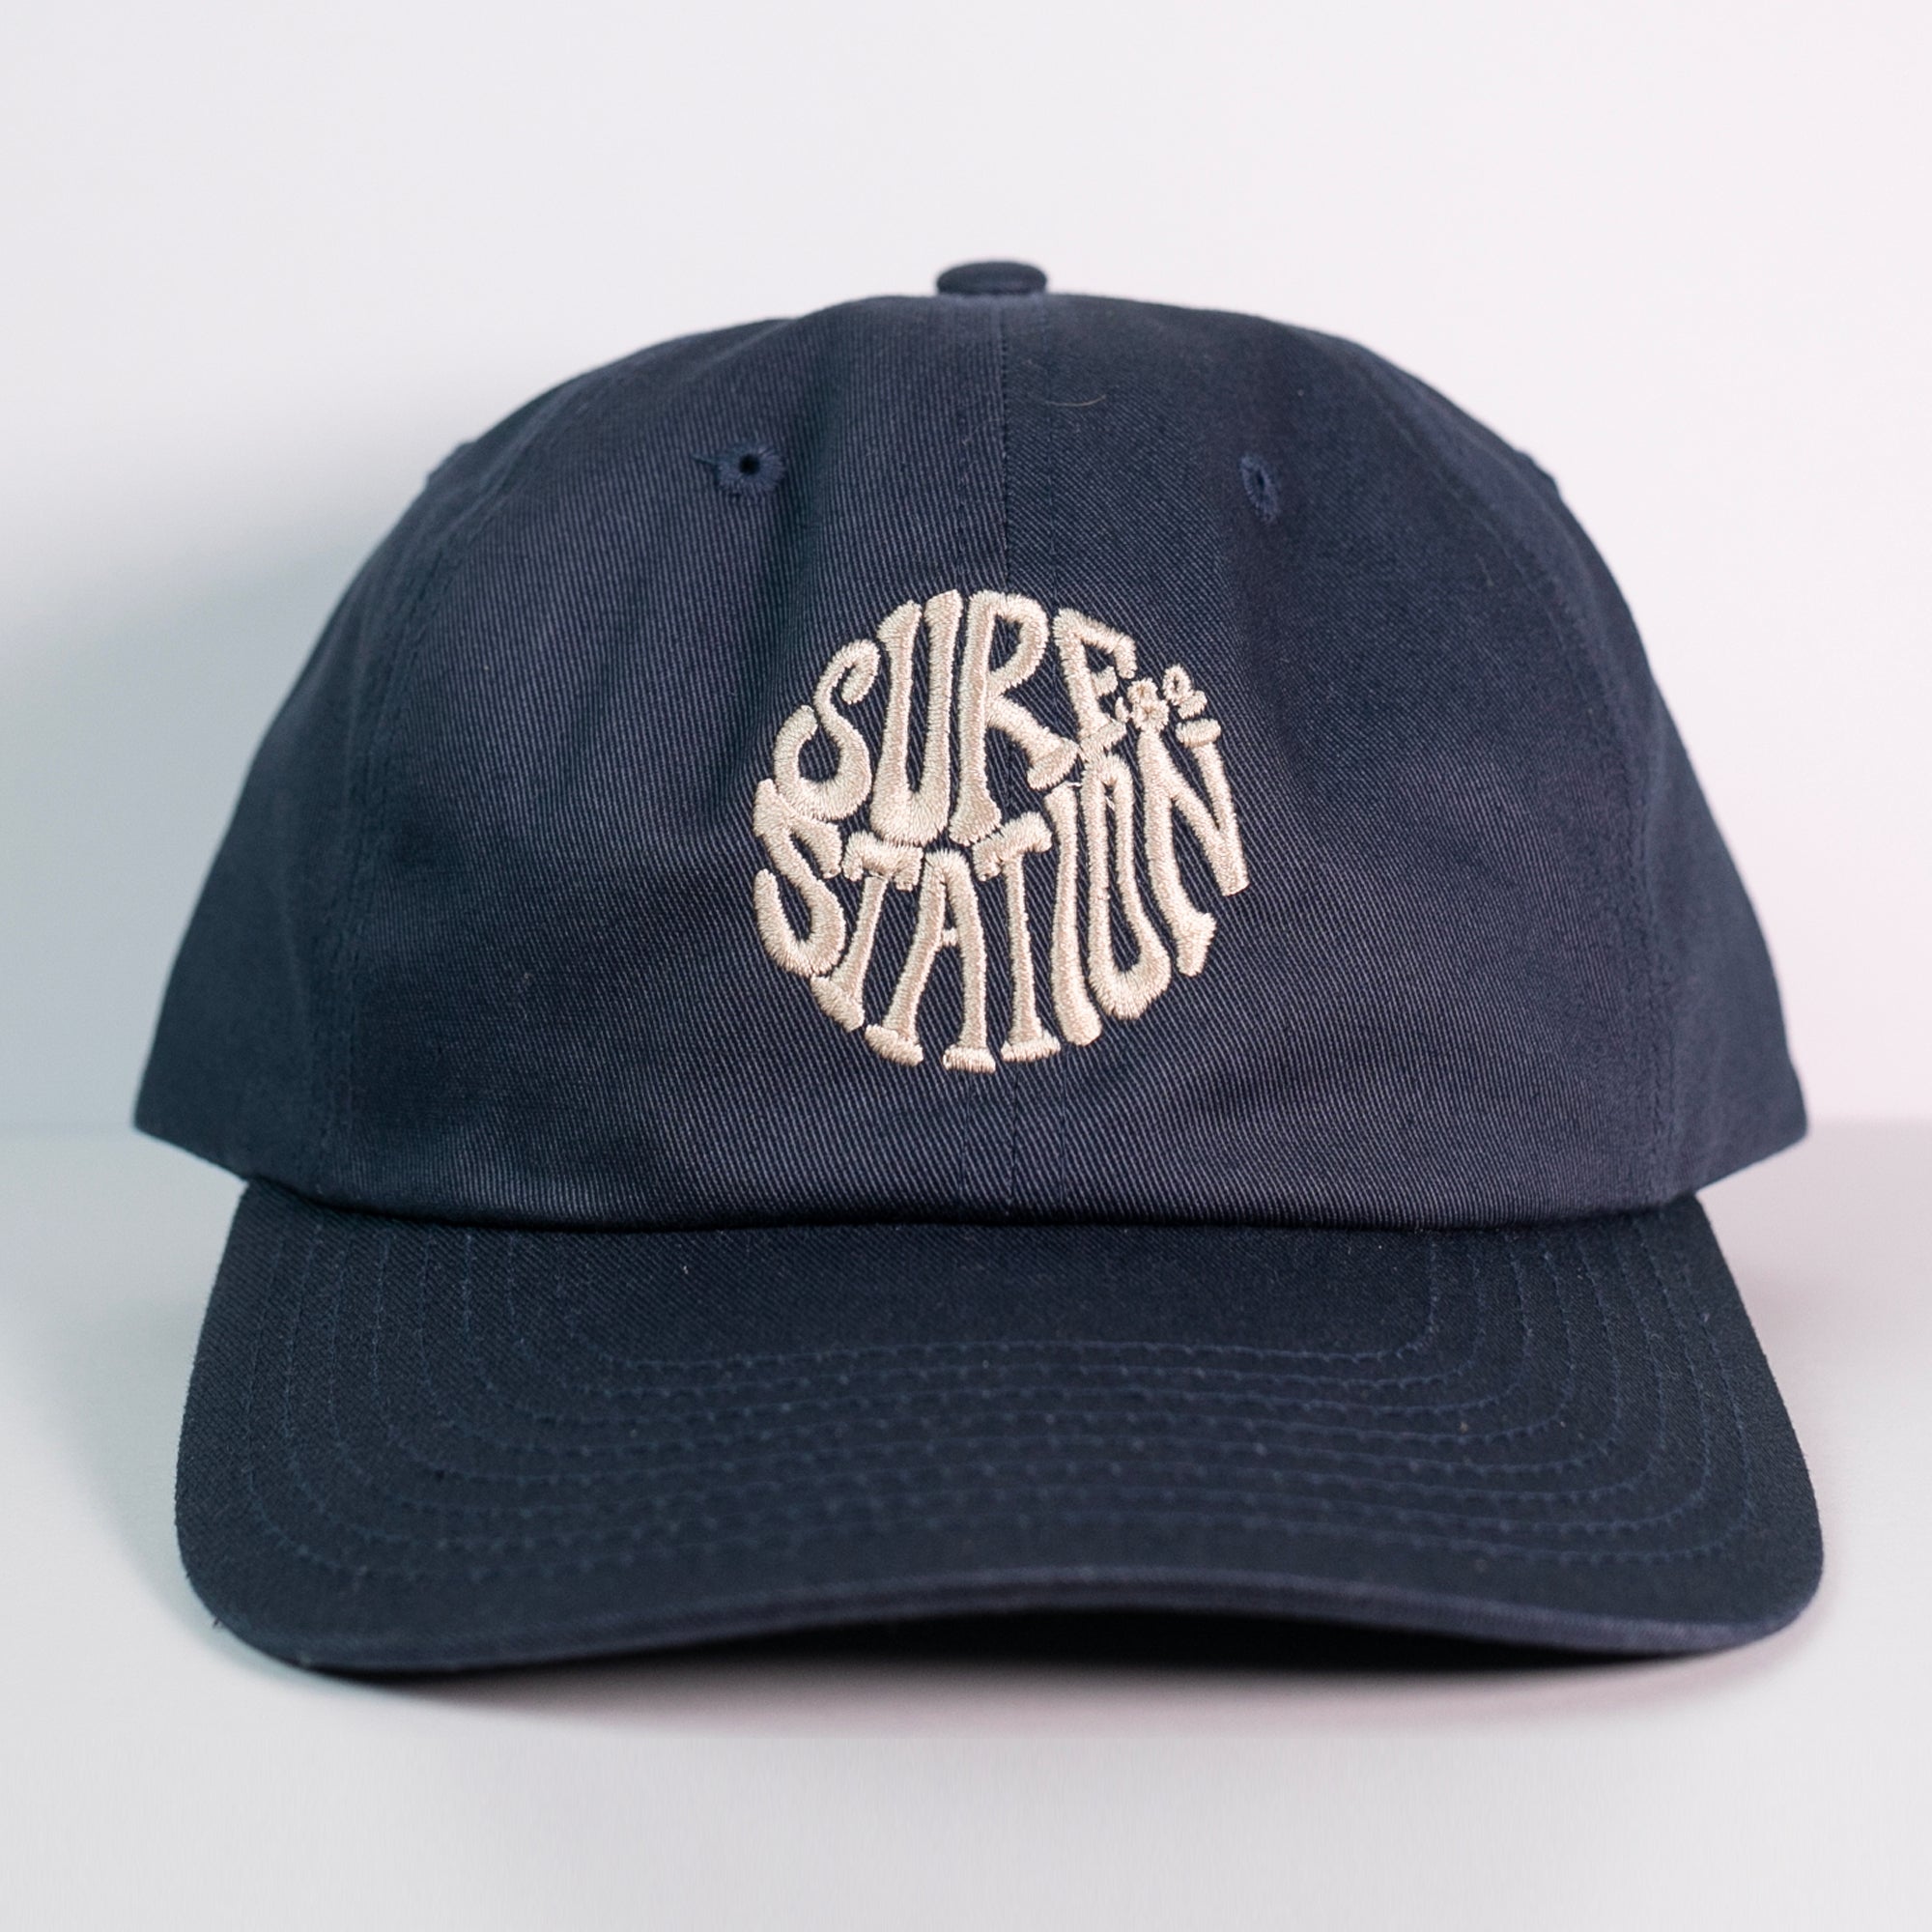 Surf Station '84 Adjustable Men's Hat